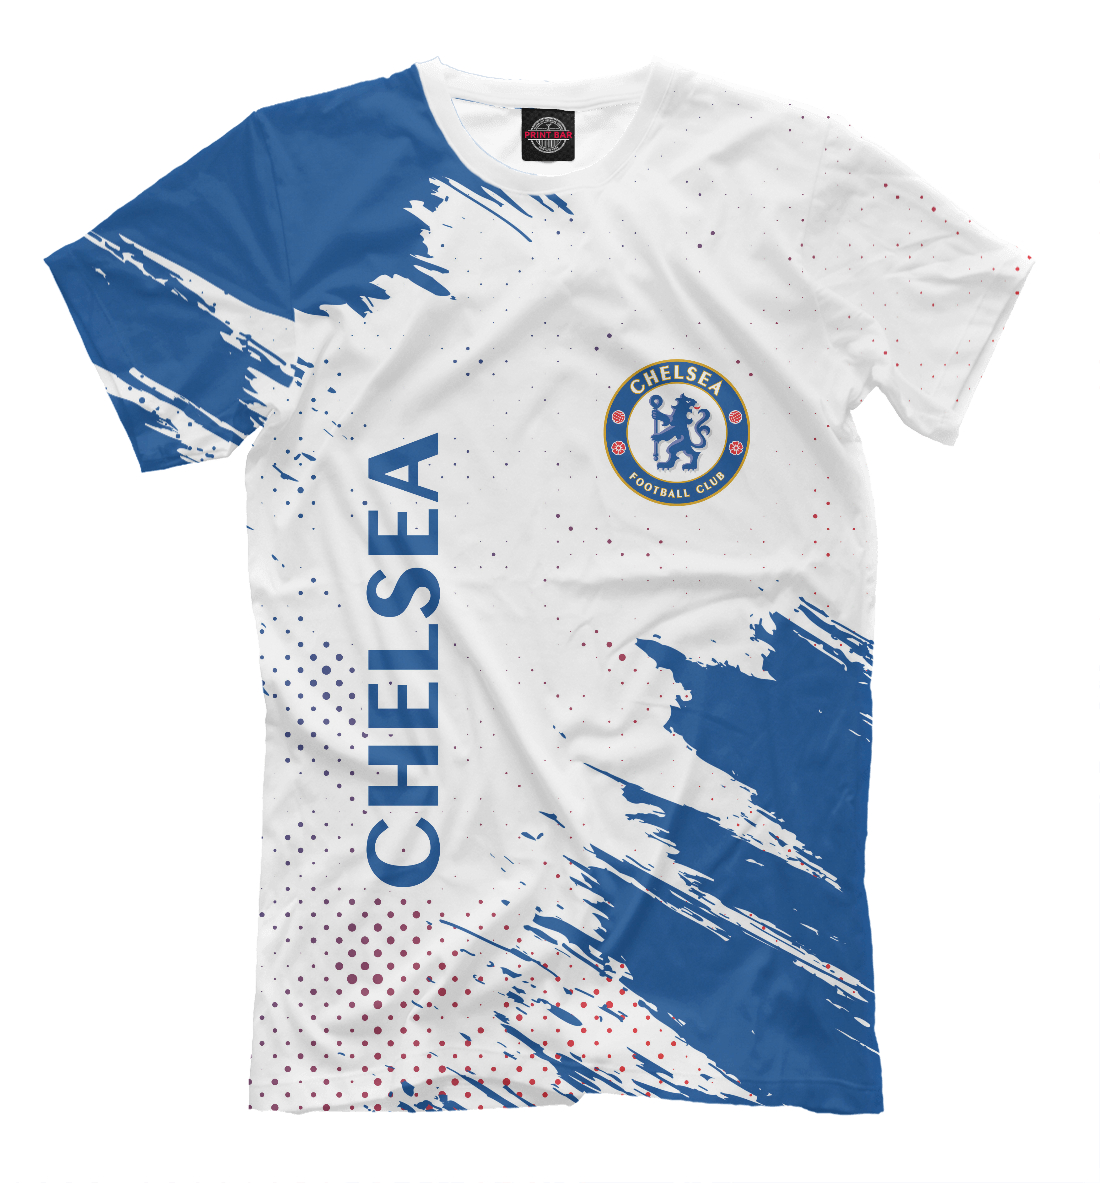 Футболка Chelsea F.C. / Челси для мальчиков, артикул: CHL-673689-fut-2mp